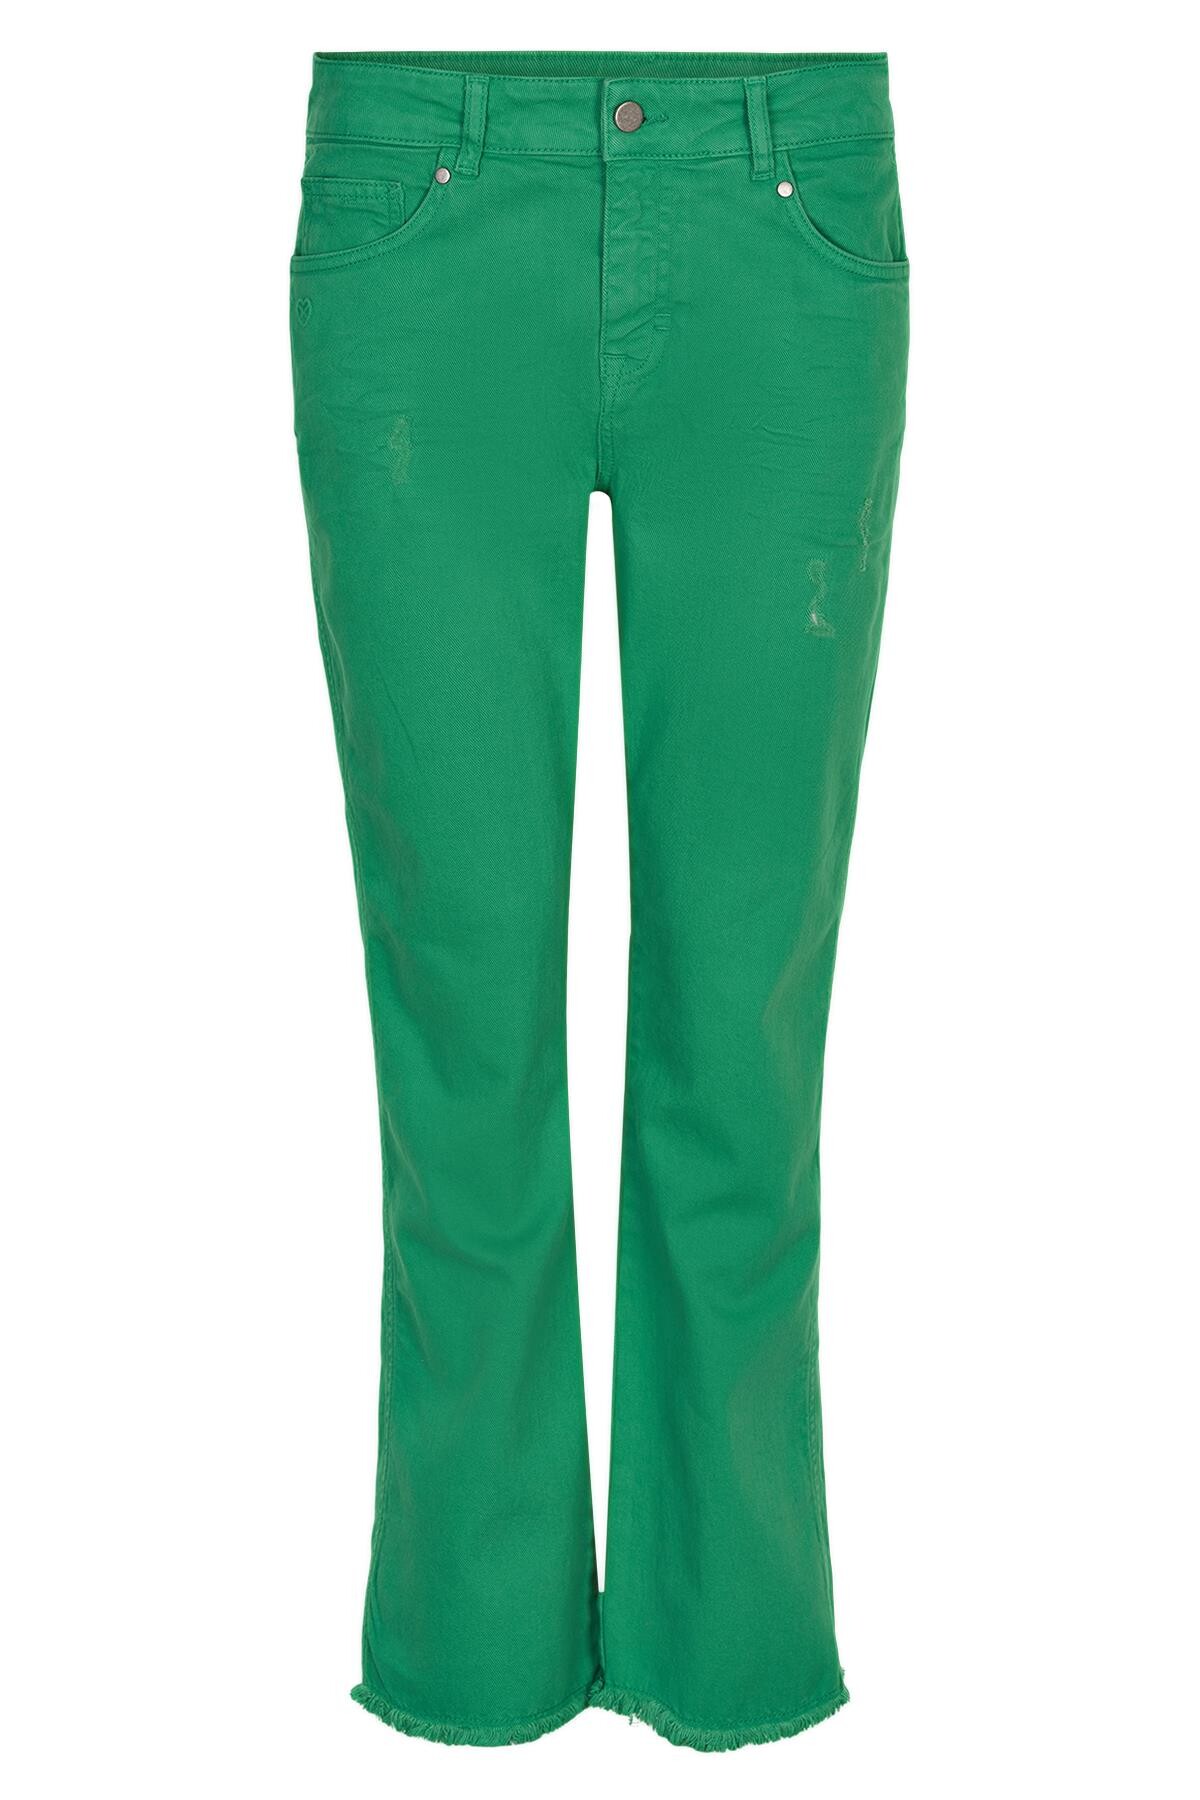 Se IN FRONT Ellie Jeans, Farve: Grass, Størrelse: 36, Dame hos Infront Women